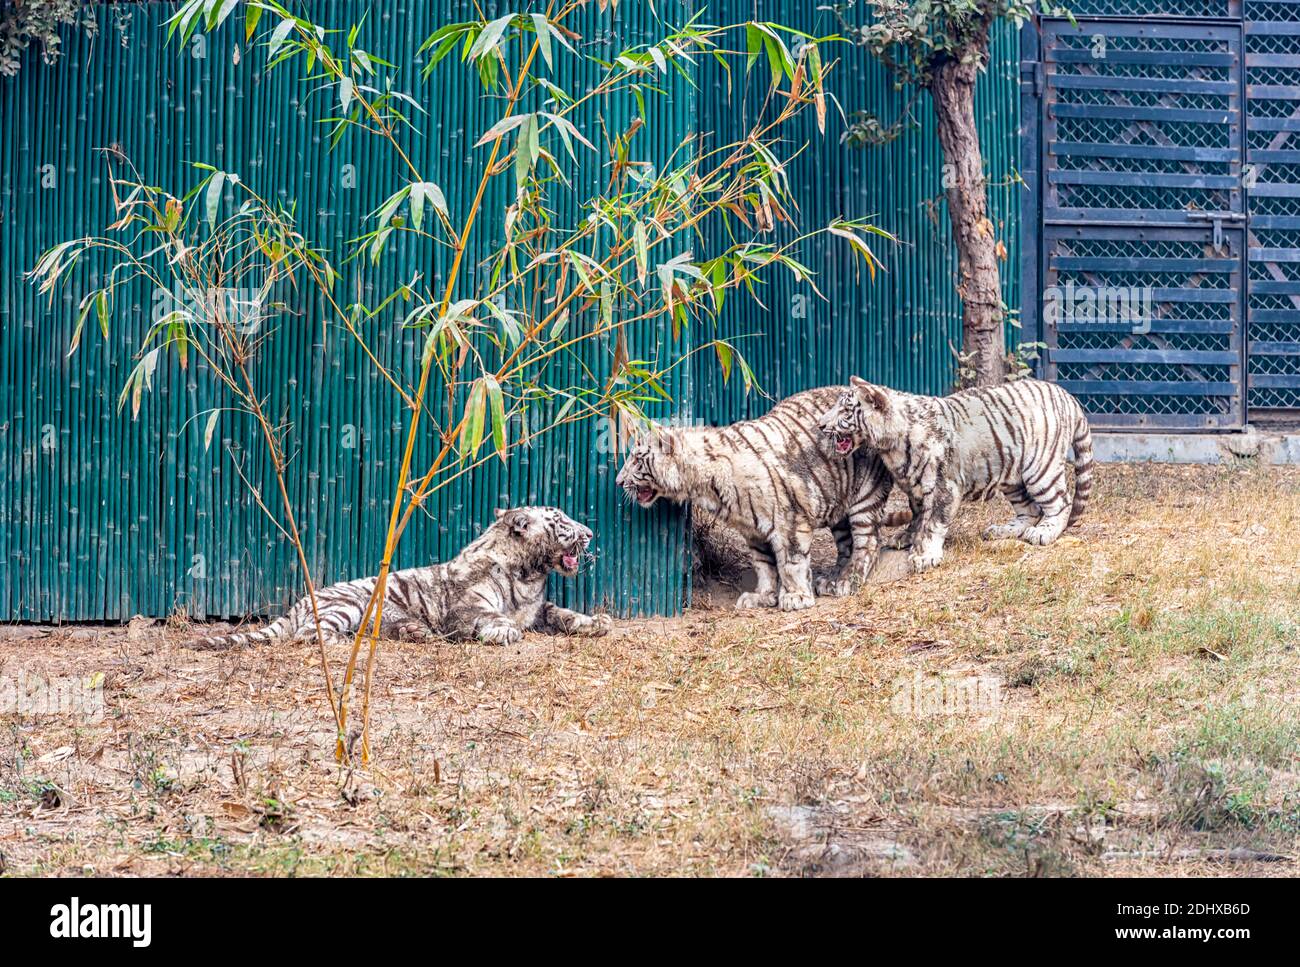 Des petits tigres blancs, d'humeur ludique, dans l'enceinte du tigre du parc zoologique national de Delhi, également connu sous le nom de zoo de Delhi. Banque D'Images